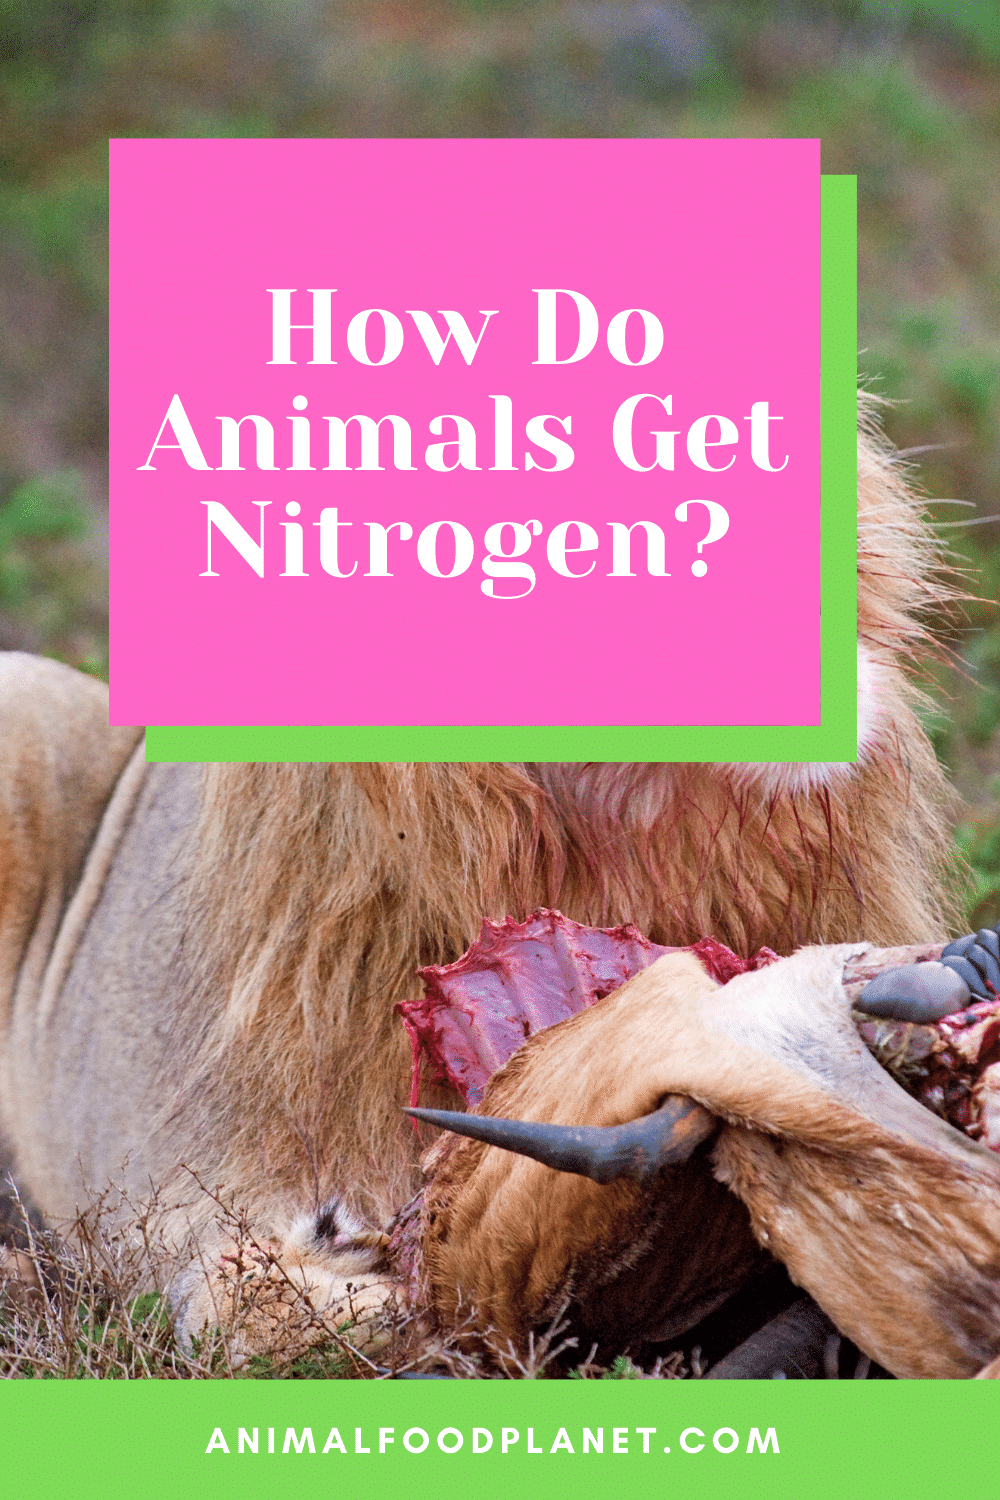 How Do Animals Get Nitrogen?